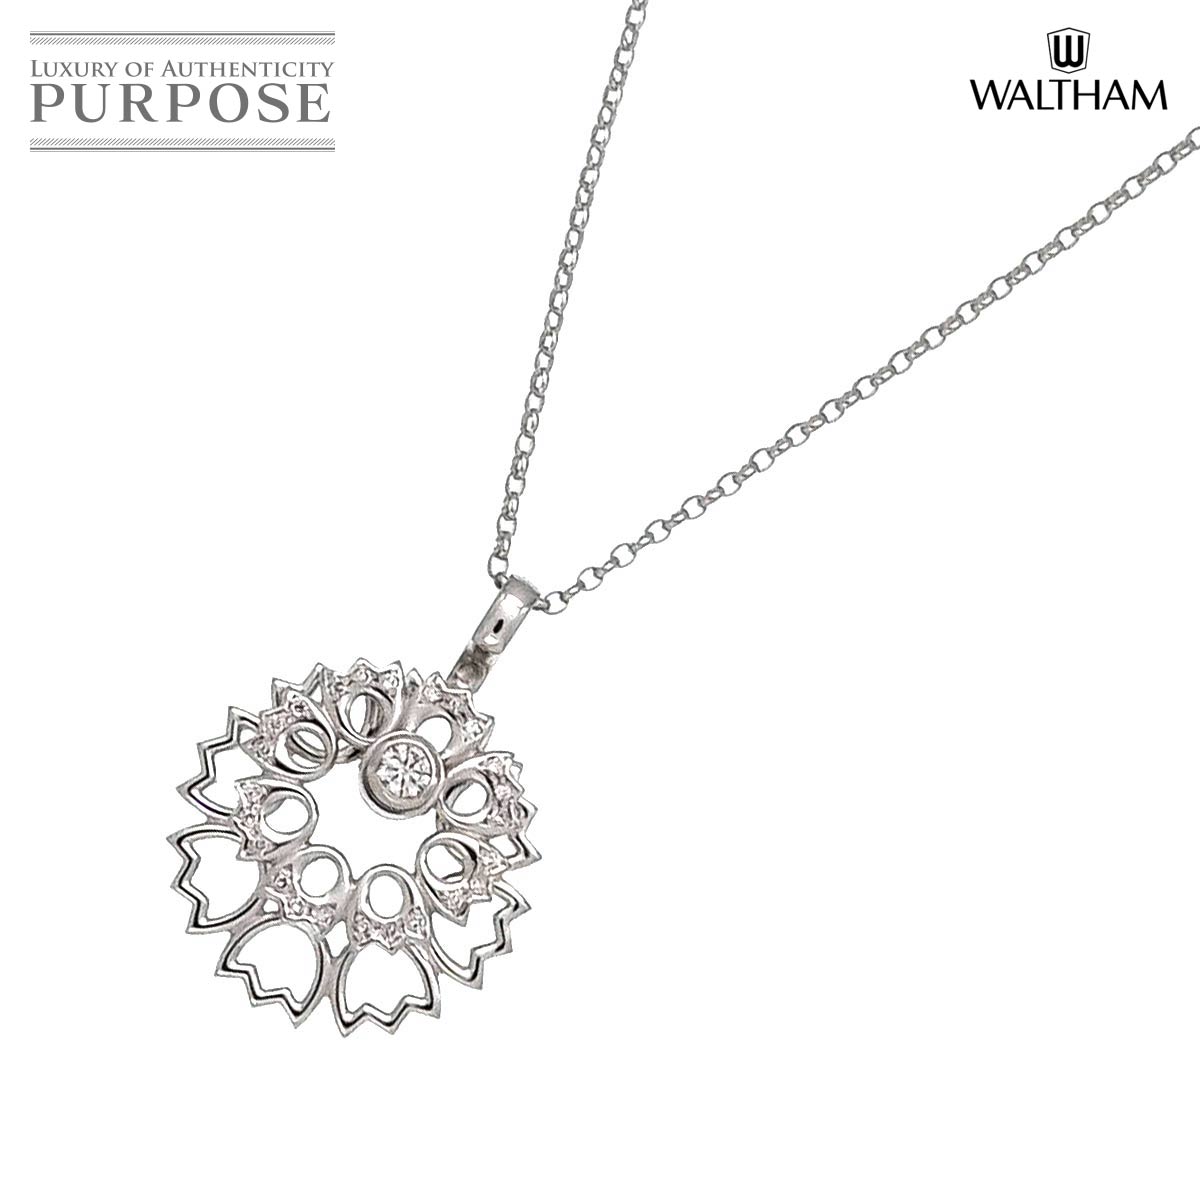 【新品同様】 ウォルサム WALTHAM ダイヤ 0.27ct ネックレス 45cm K18 WG ホワイトゴールド 750 Diamond Necklace【中古】